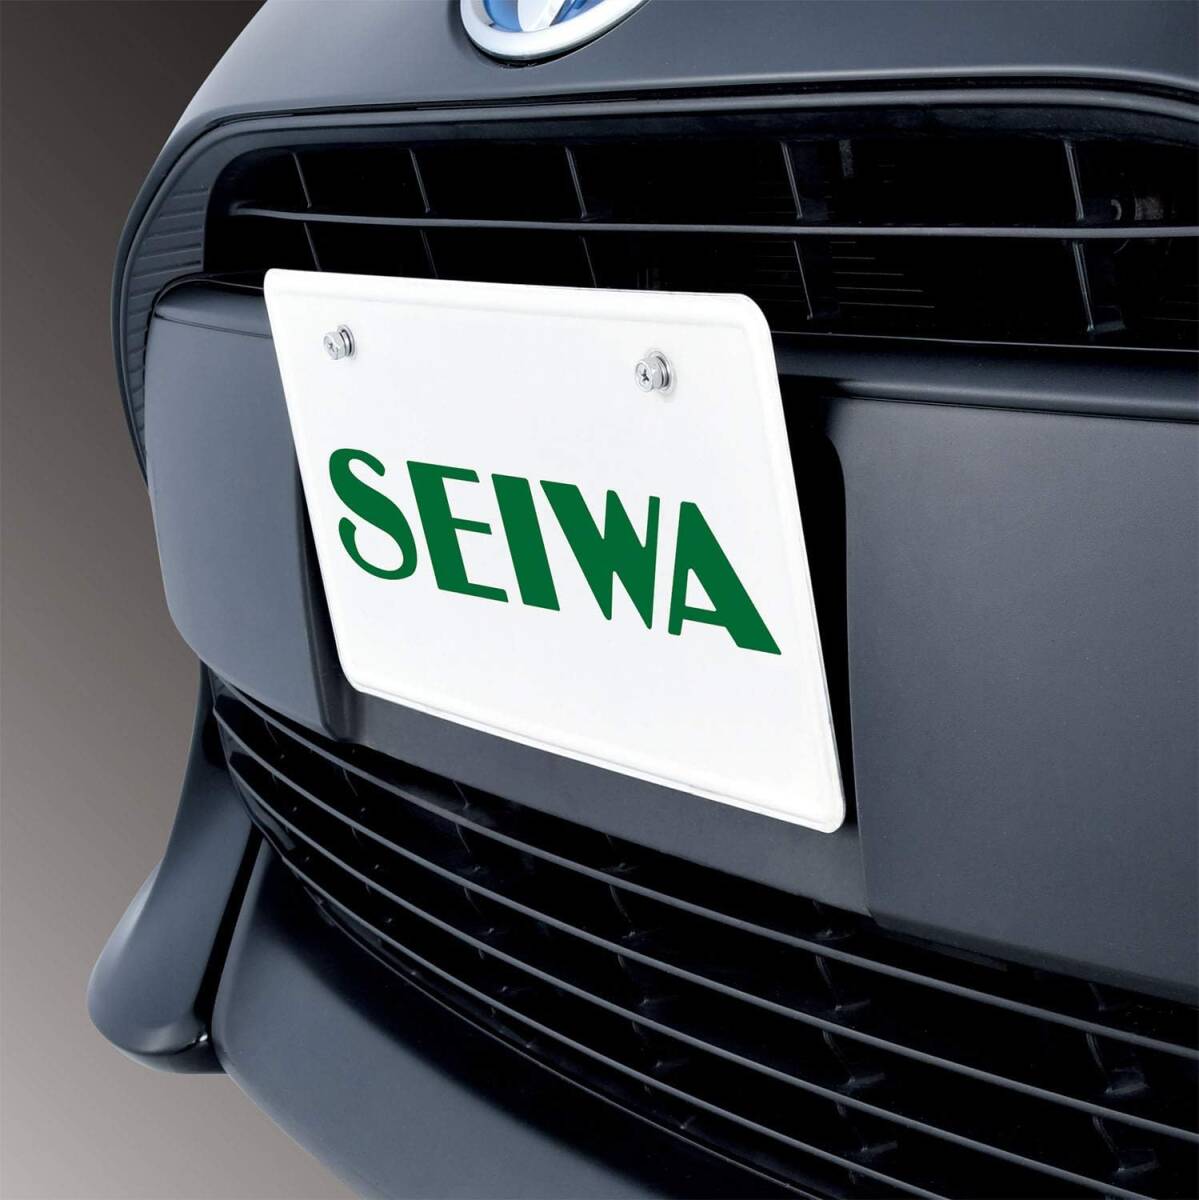 セイワ(SEIWA) 車外用品 ナンバープレートステー オフセットナンバーステー ブラック K421 アルミ素材 角度調節_画像2